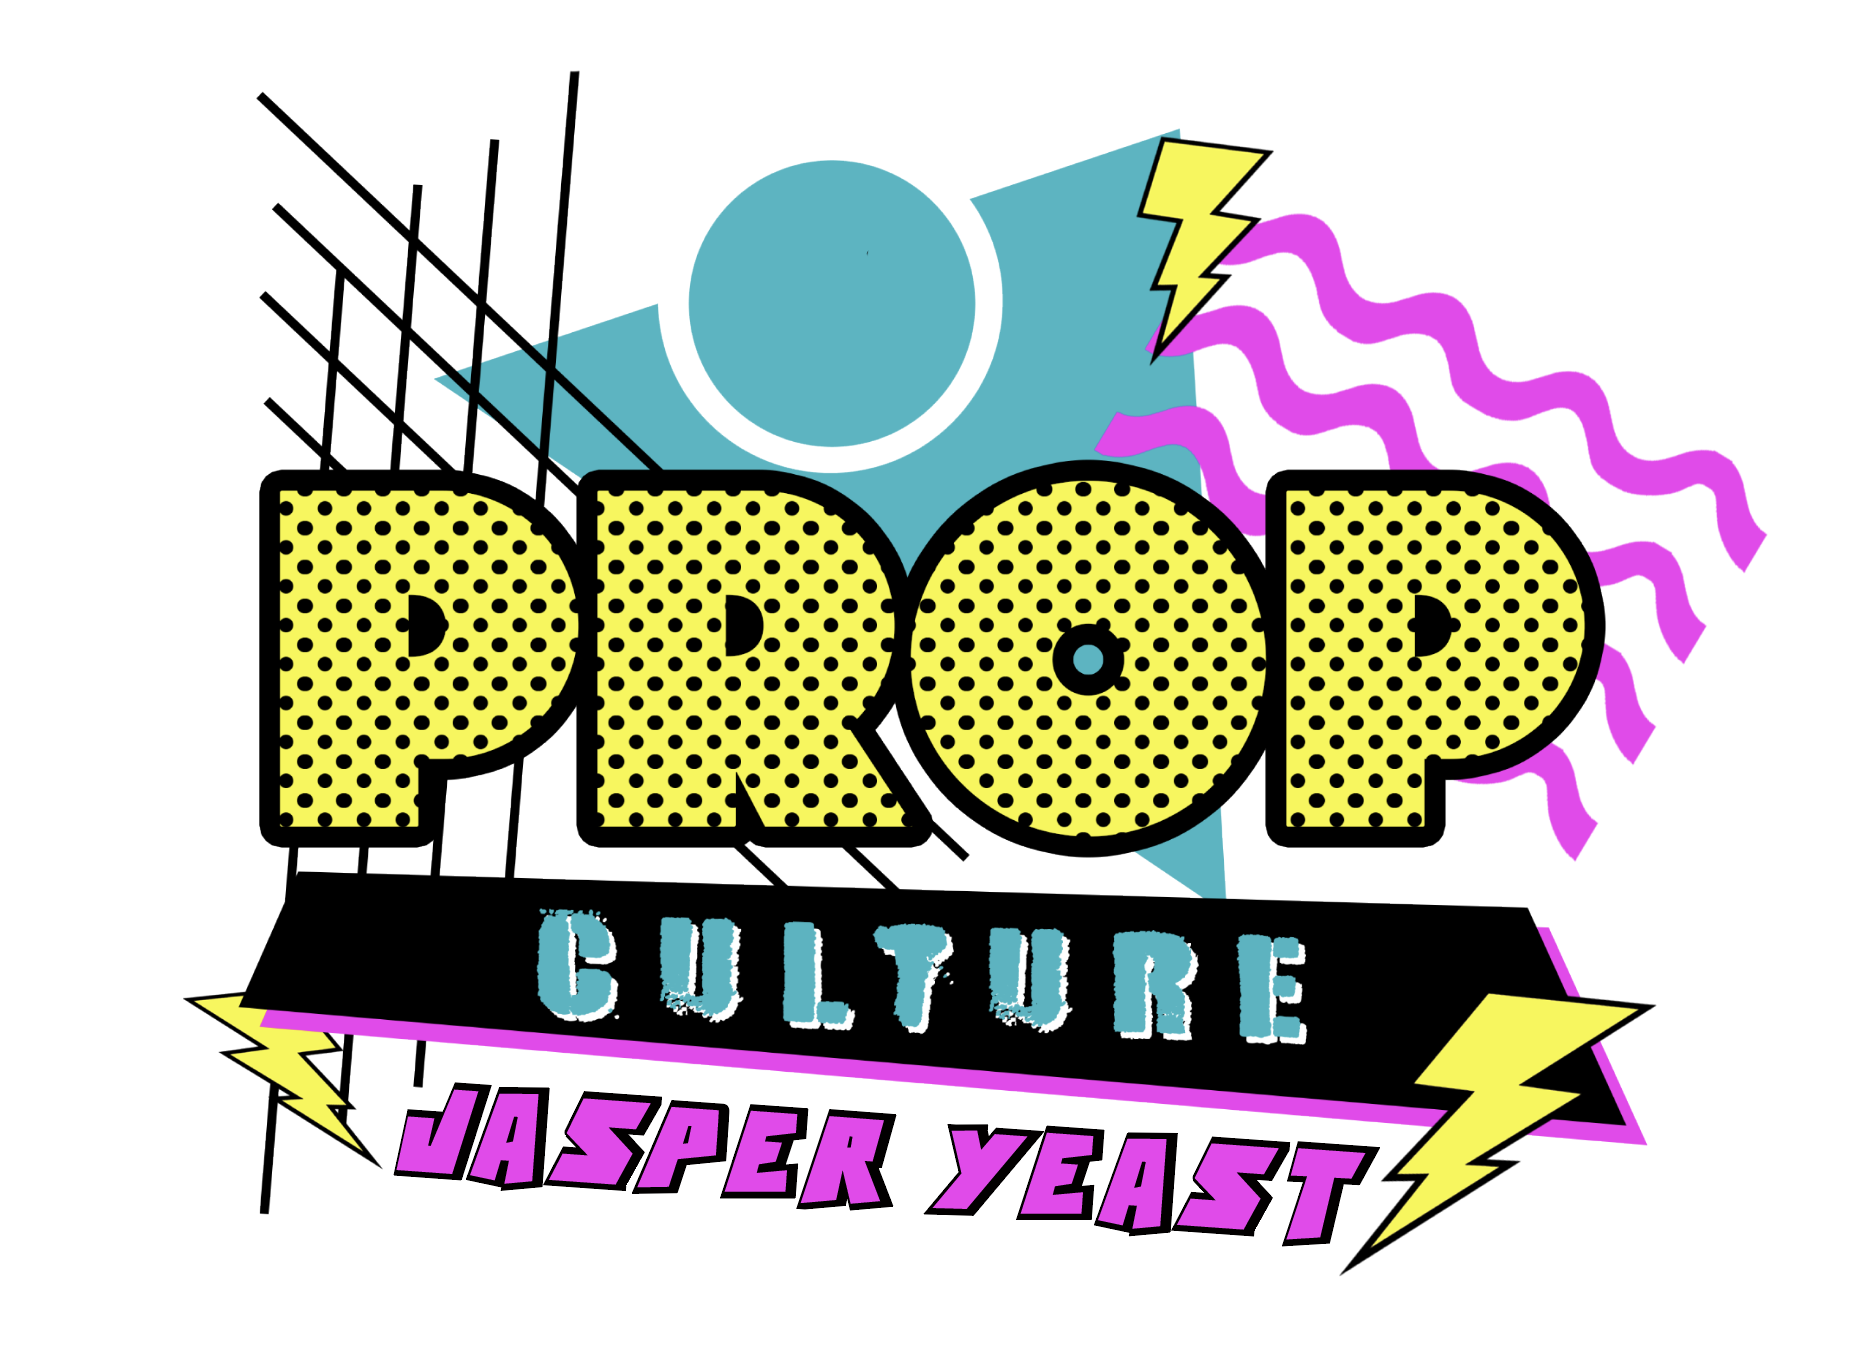 Prop Culture by Jasper Yeast